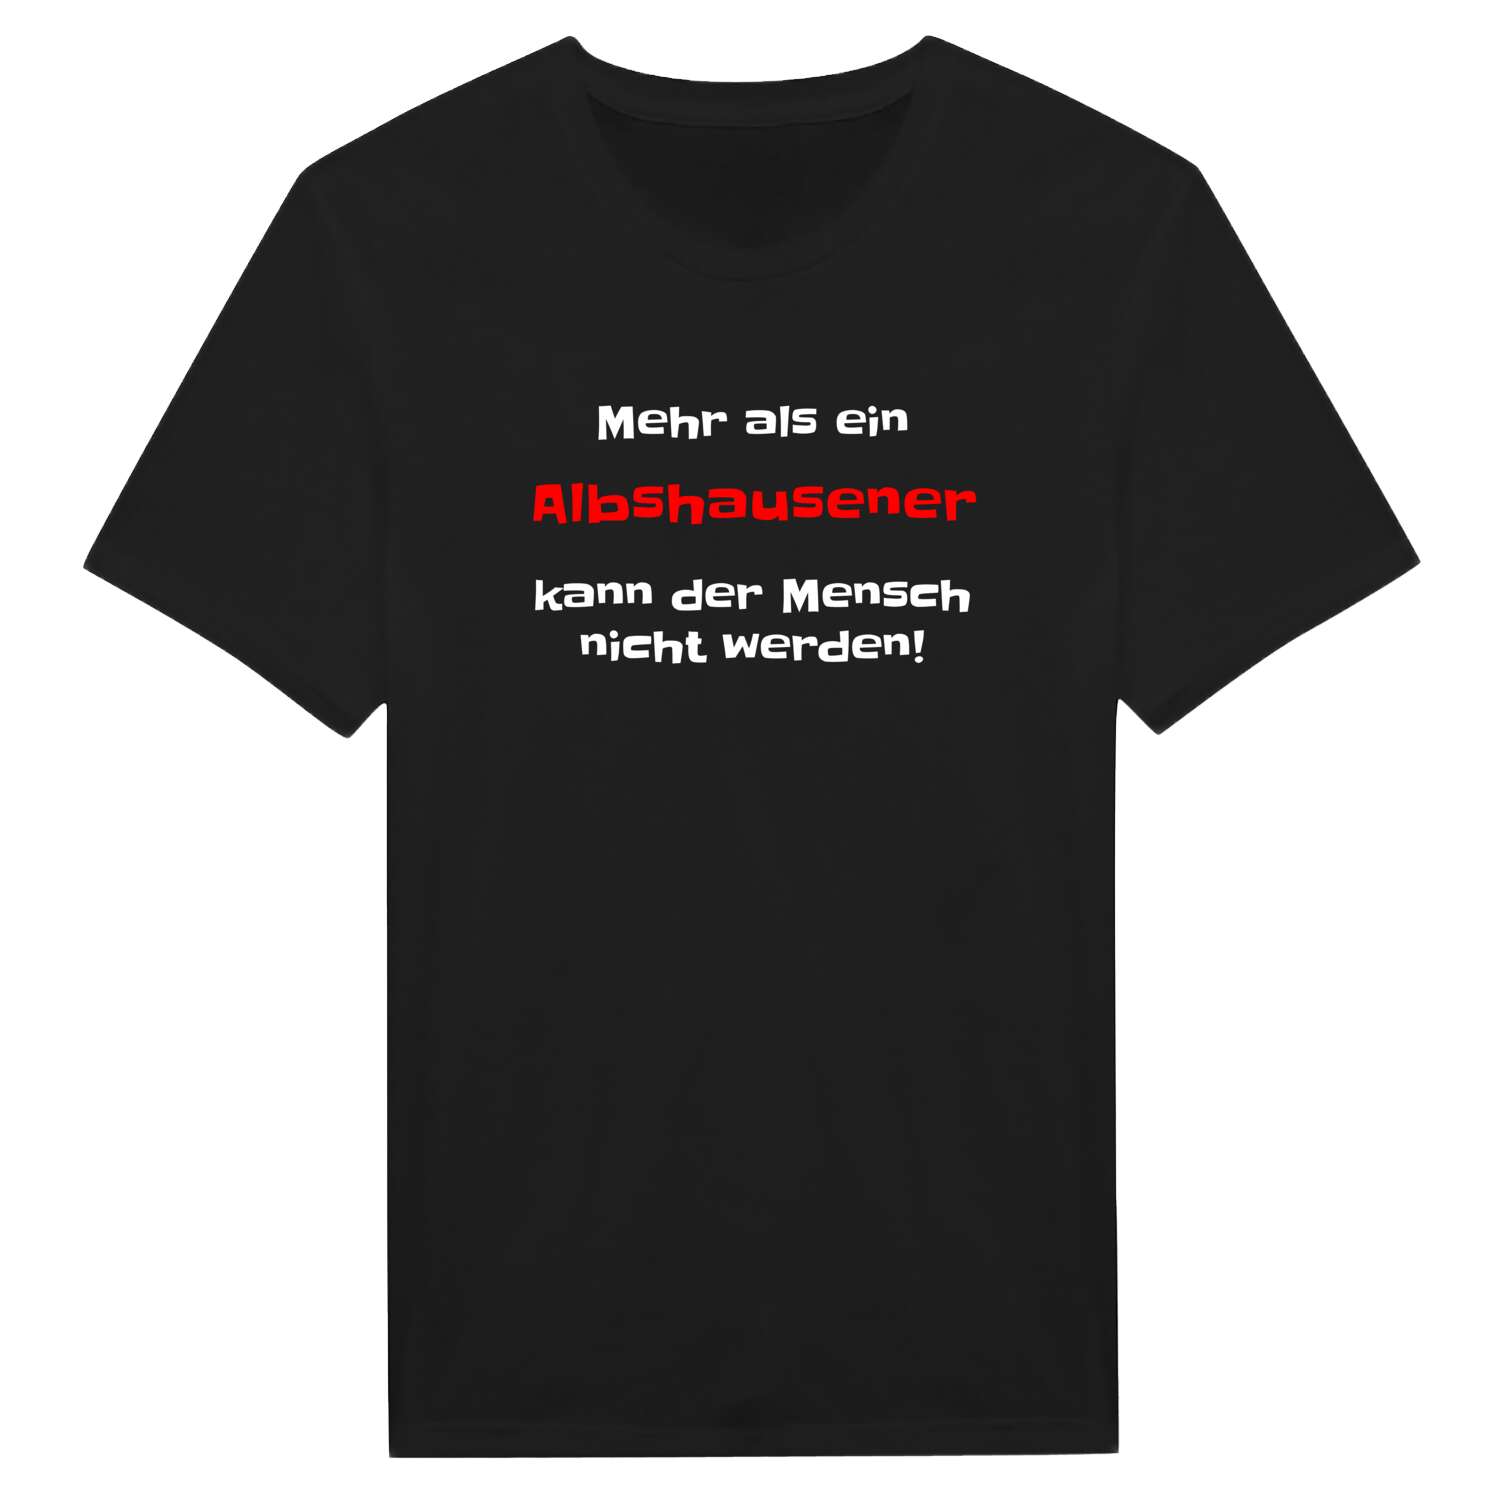 Albshausen T-Shirt »Mehr als ein«